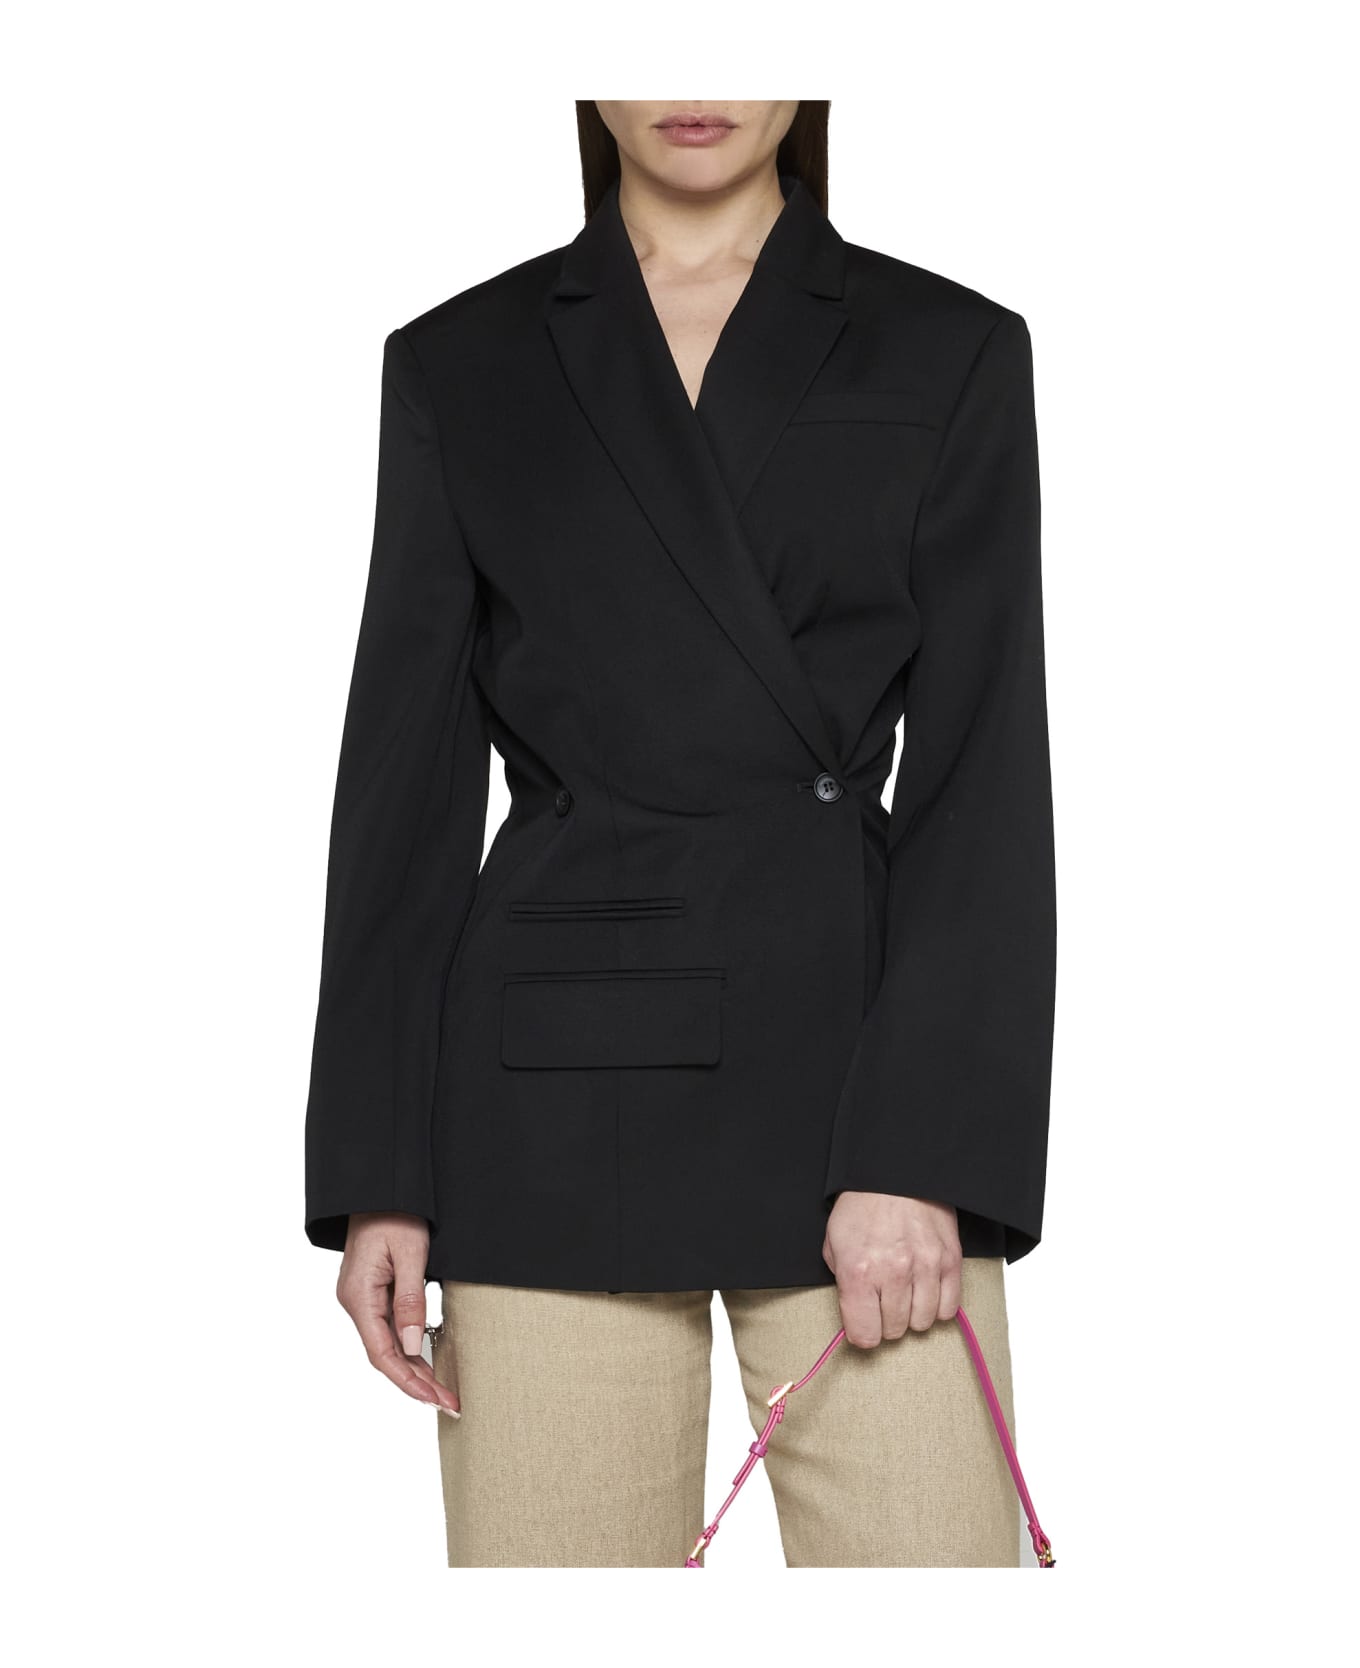 Jacquemus Jacket Dress In Cotton Tibau - Black